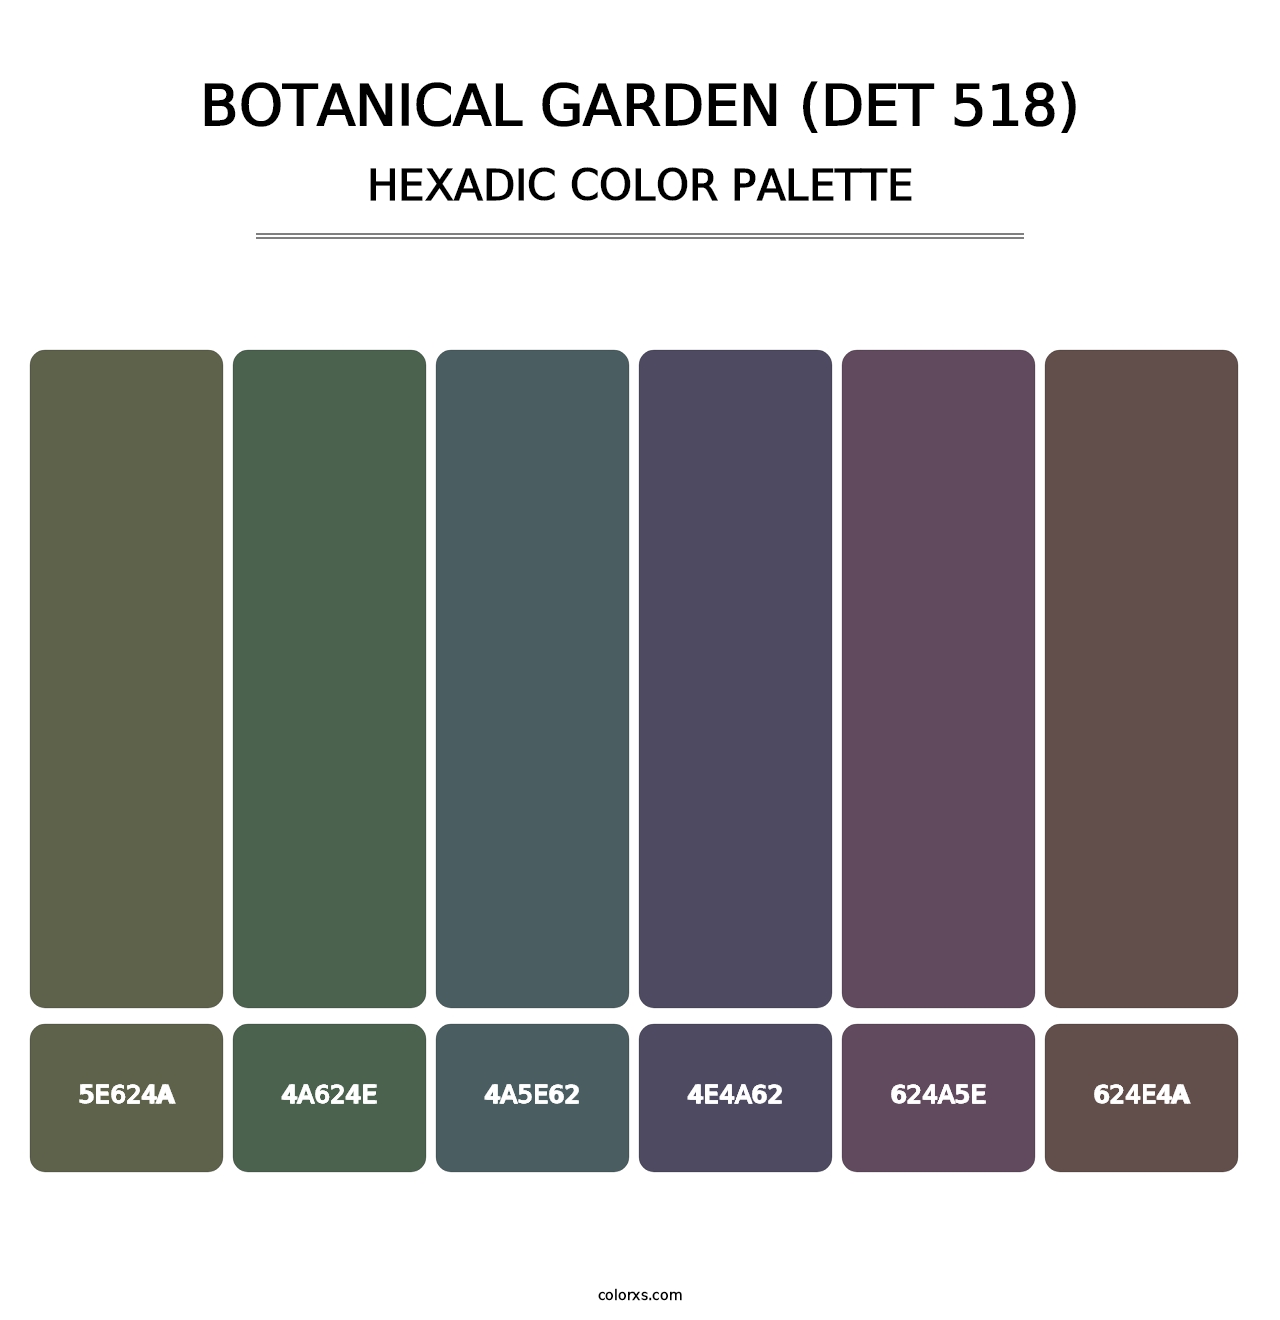 Botanical Garden (DET 518) - Hexadic Color Palette